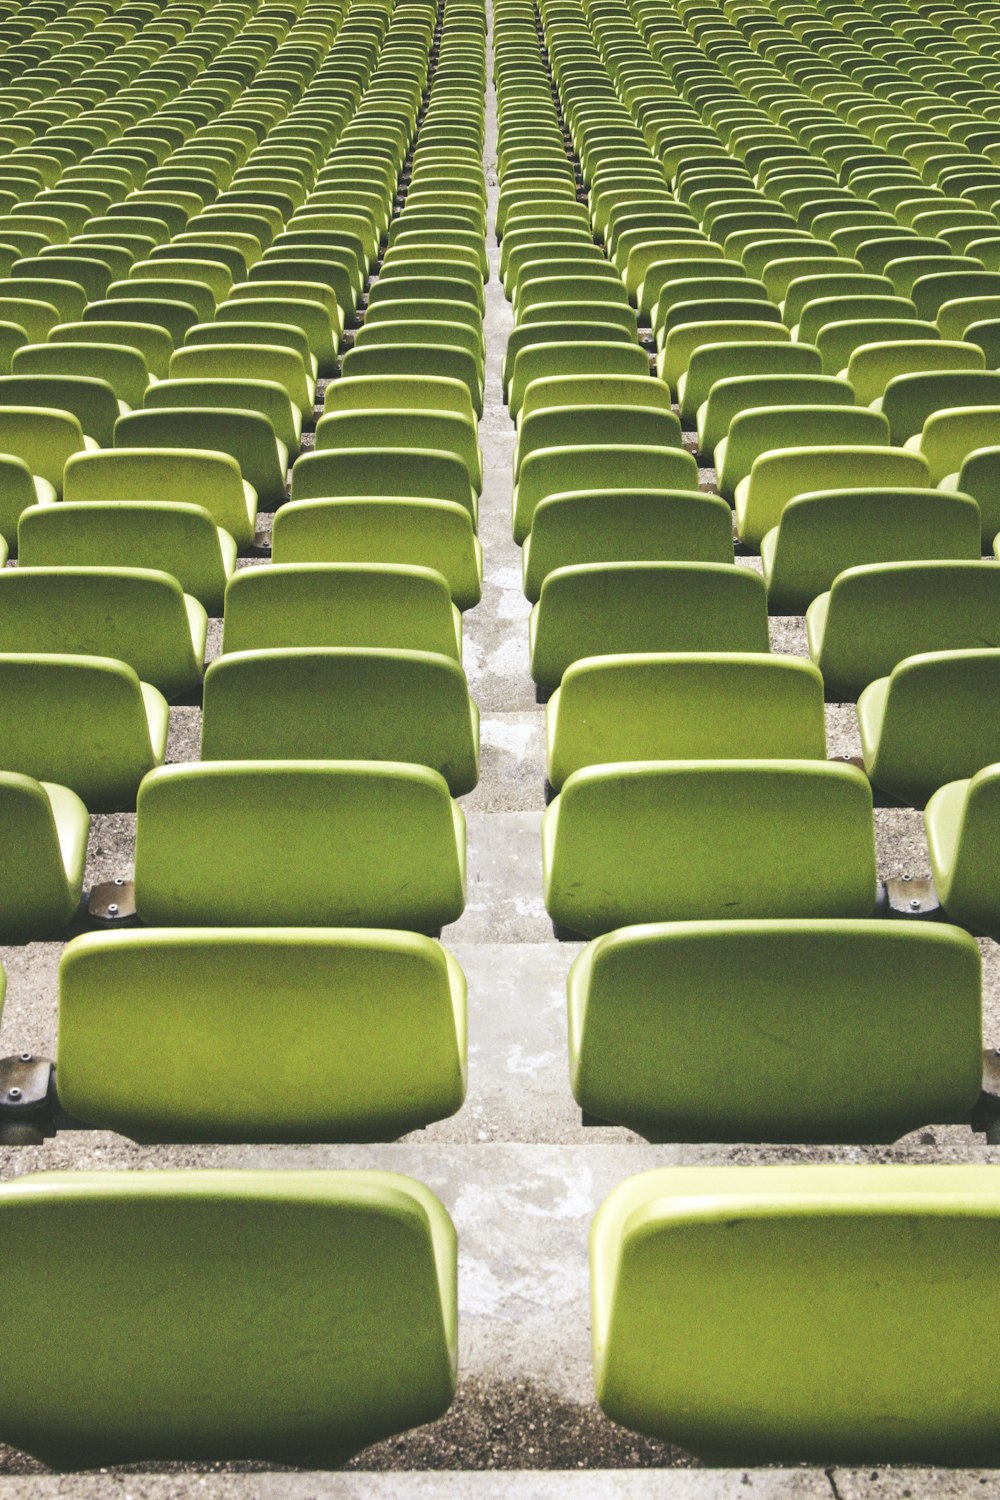 Estacionamiento de sillas de campo deportivo verde durante el día